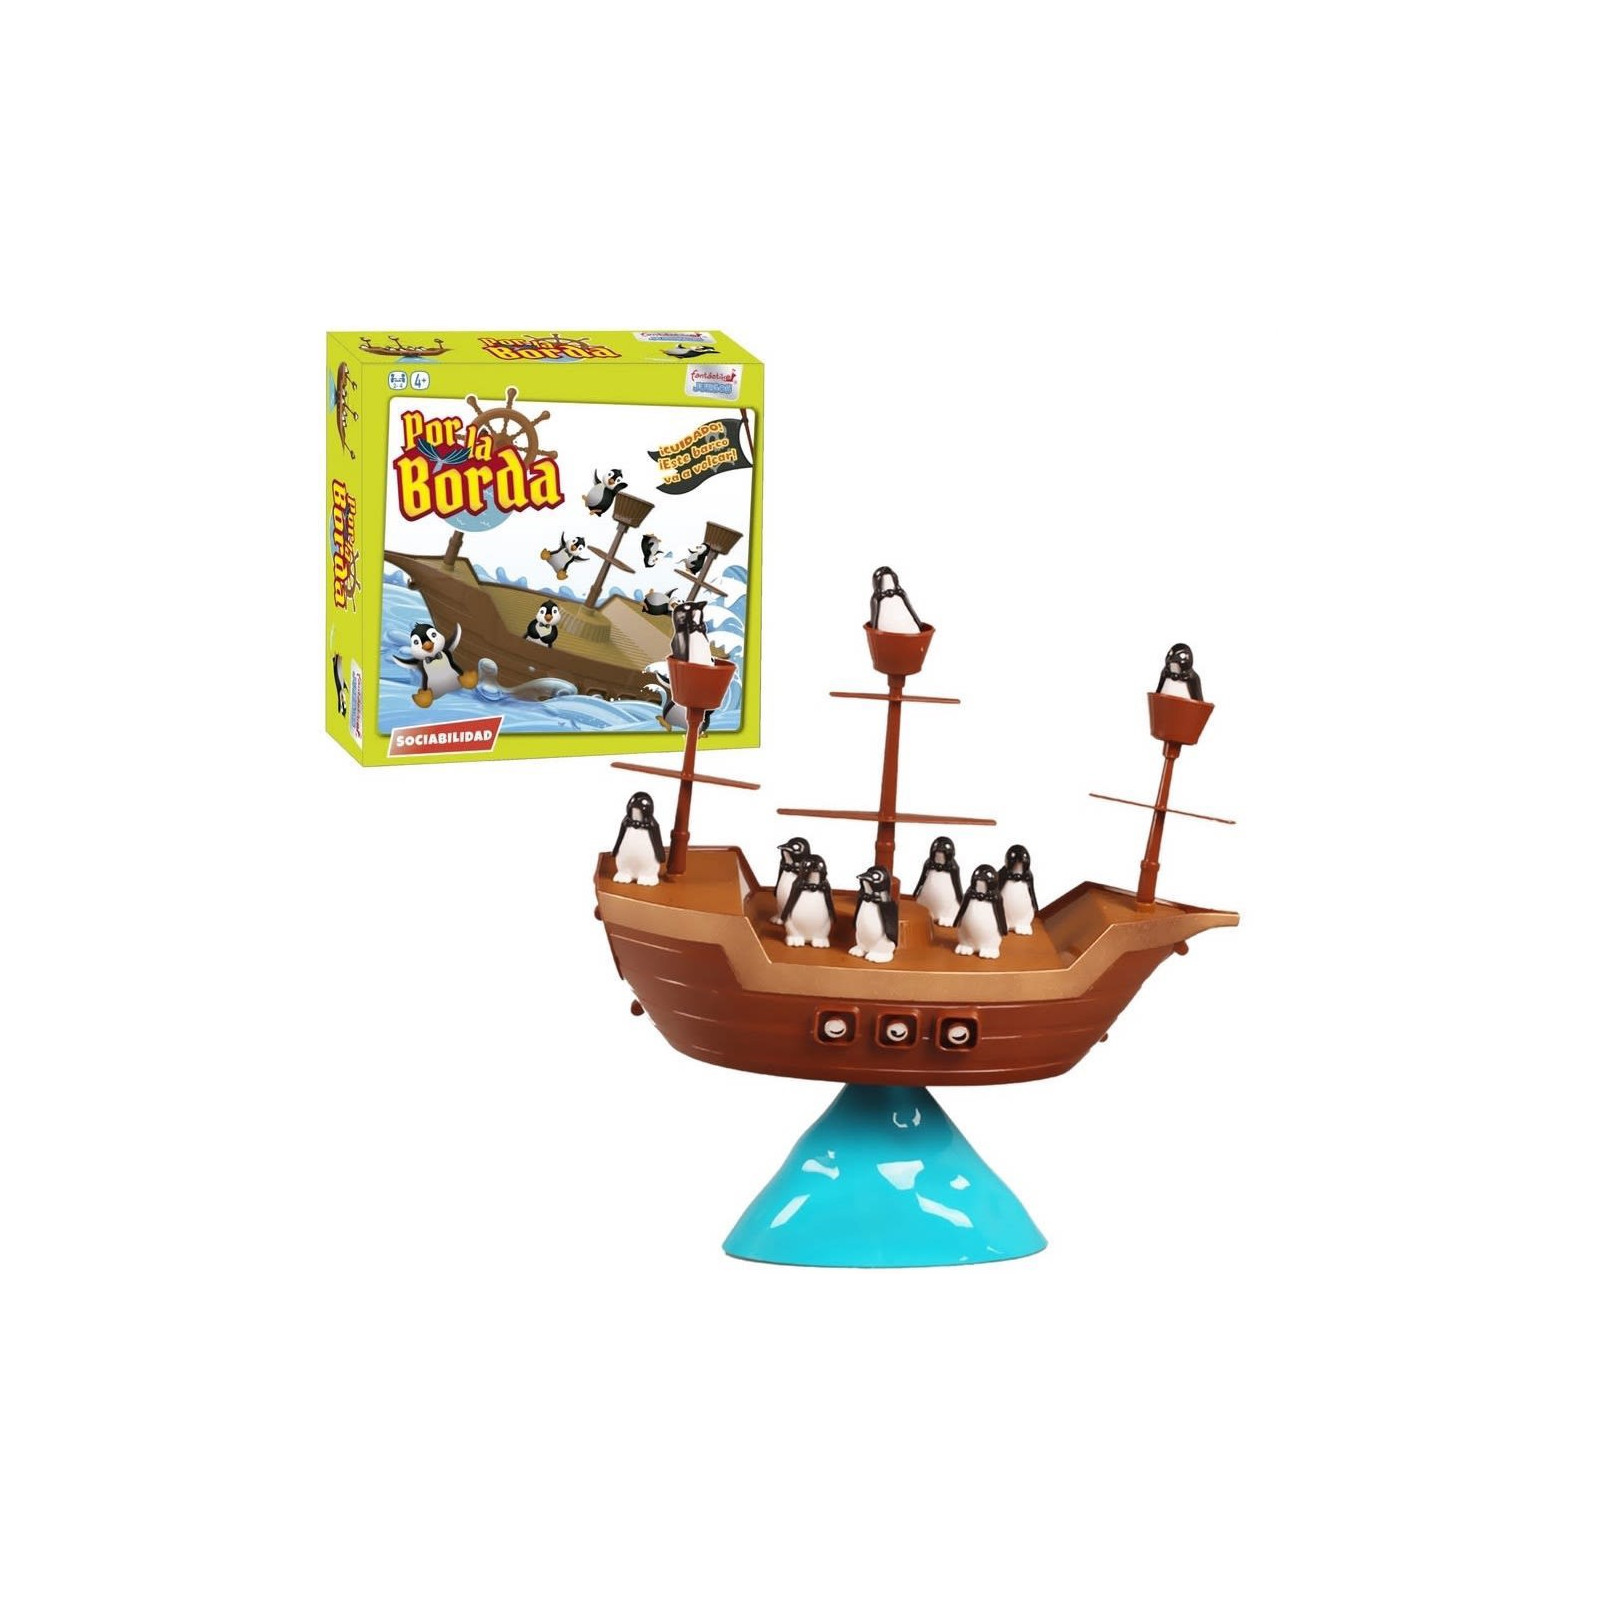 Juego de mesa barco pirata pingüinos por la borda